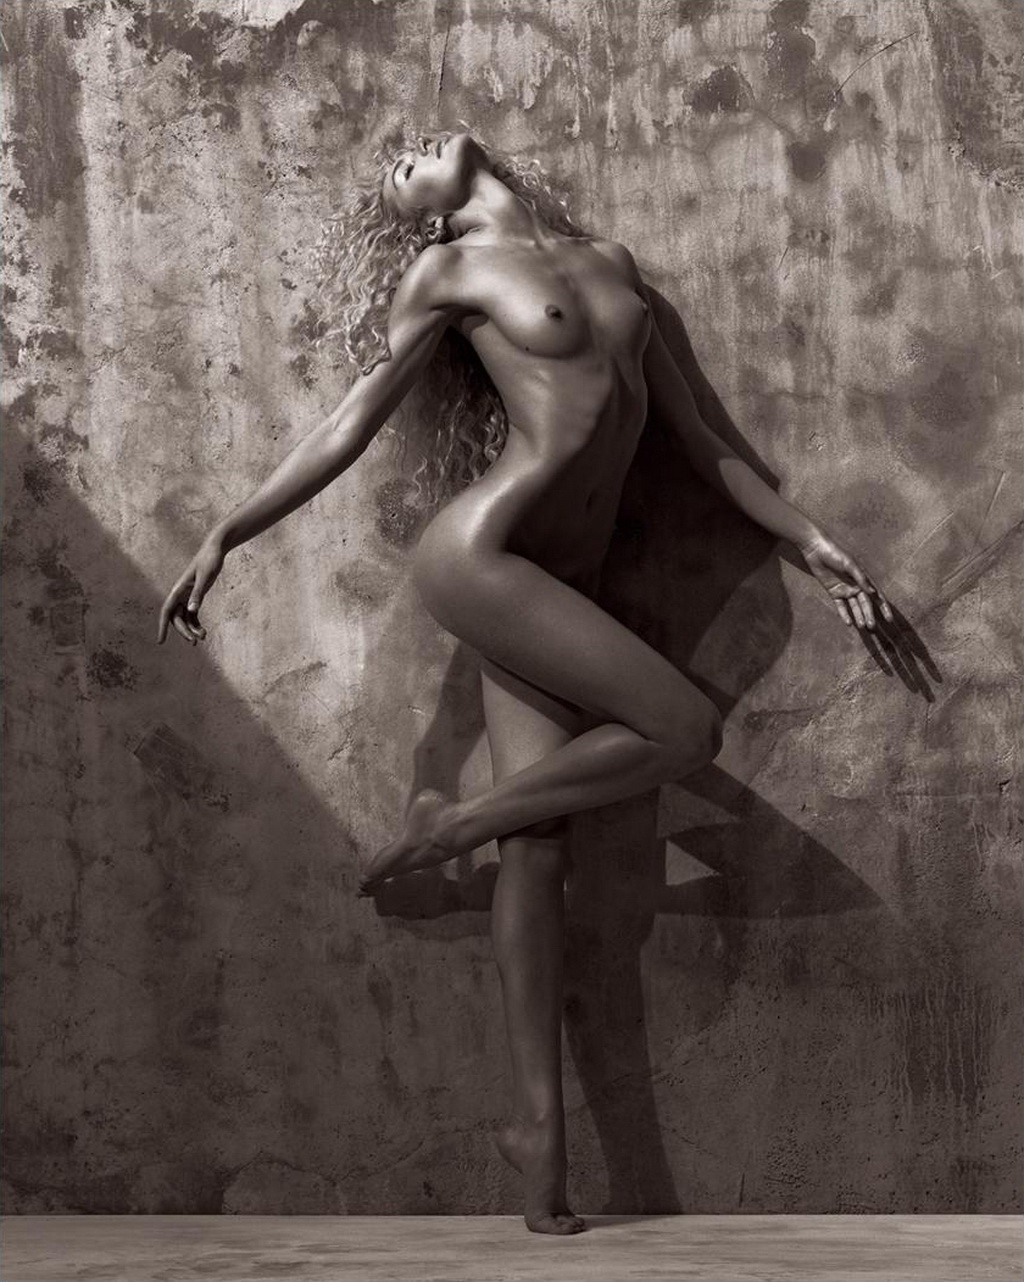 キャンディス・スワンポール、マリアーノ・ヴィヴァンコの写真展で美しい裸体を披露
 #75259760